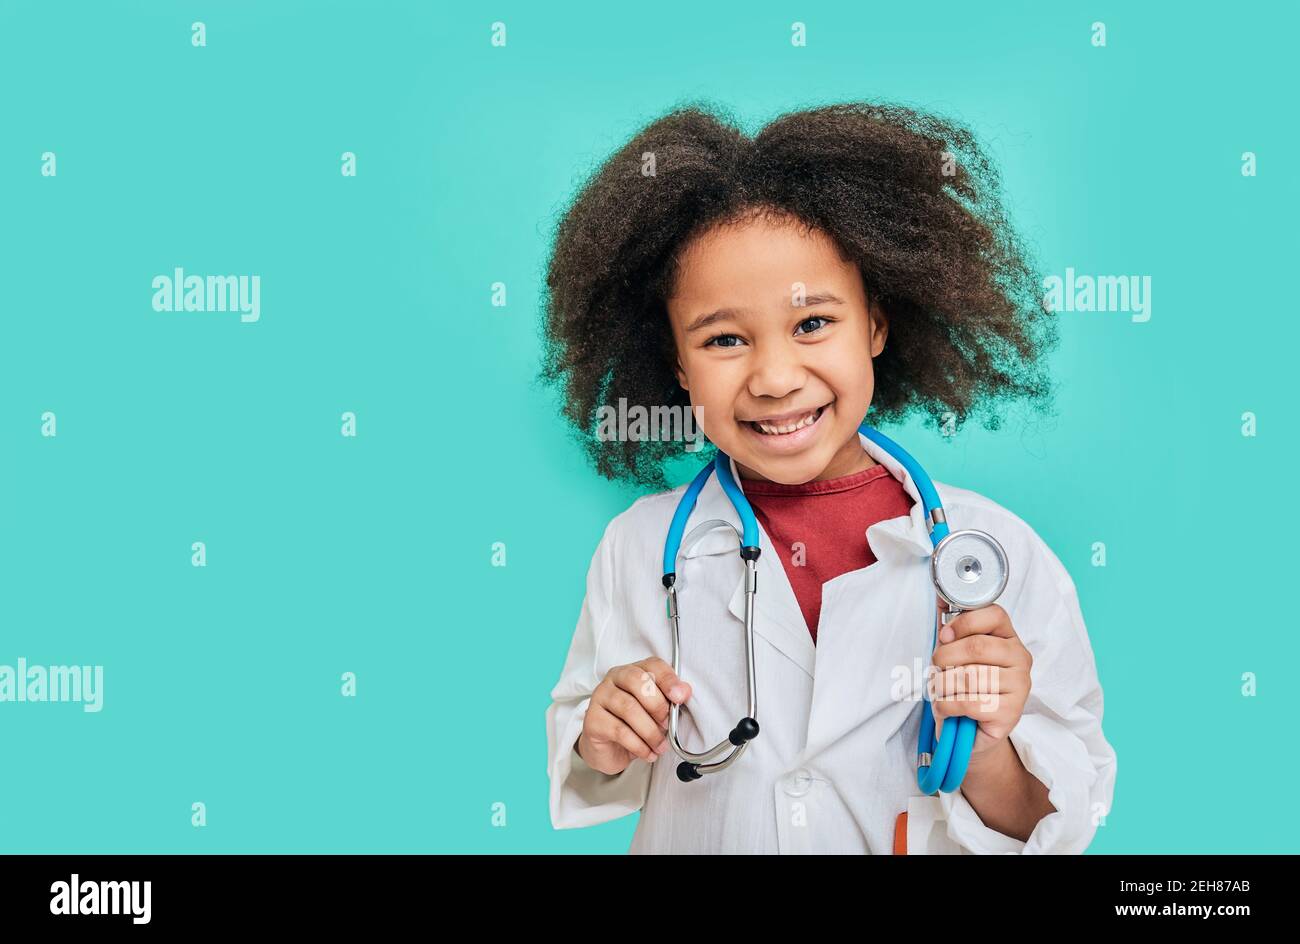 Porträt einer positiven afroamerikanischen Kätzin mit einem Doktor Mantel mit Phonendoskop, auf türkisfarbenem Hintergrund stehend Stockfoto